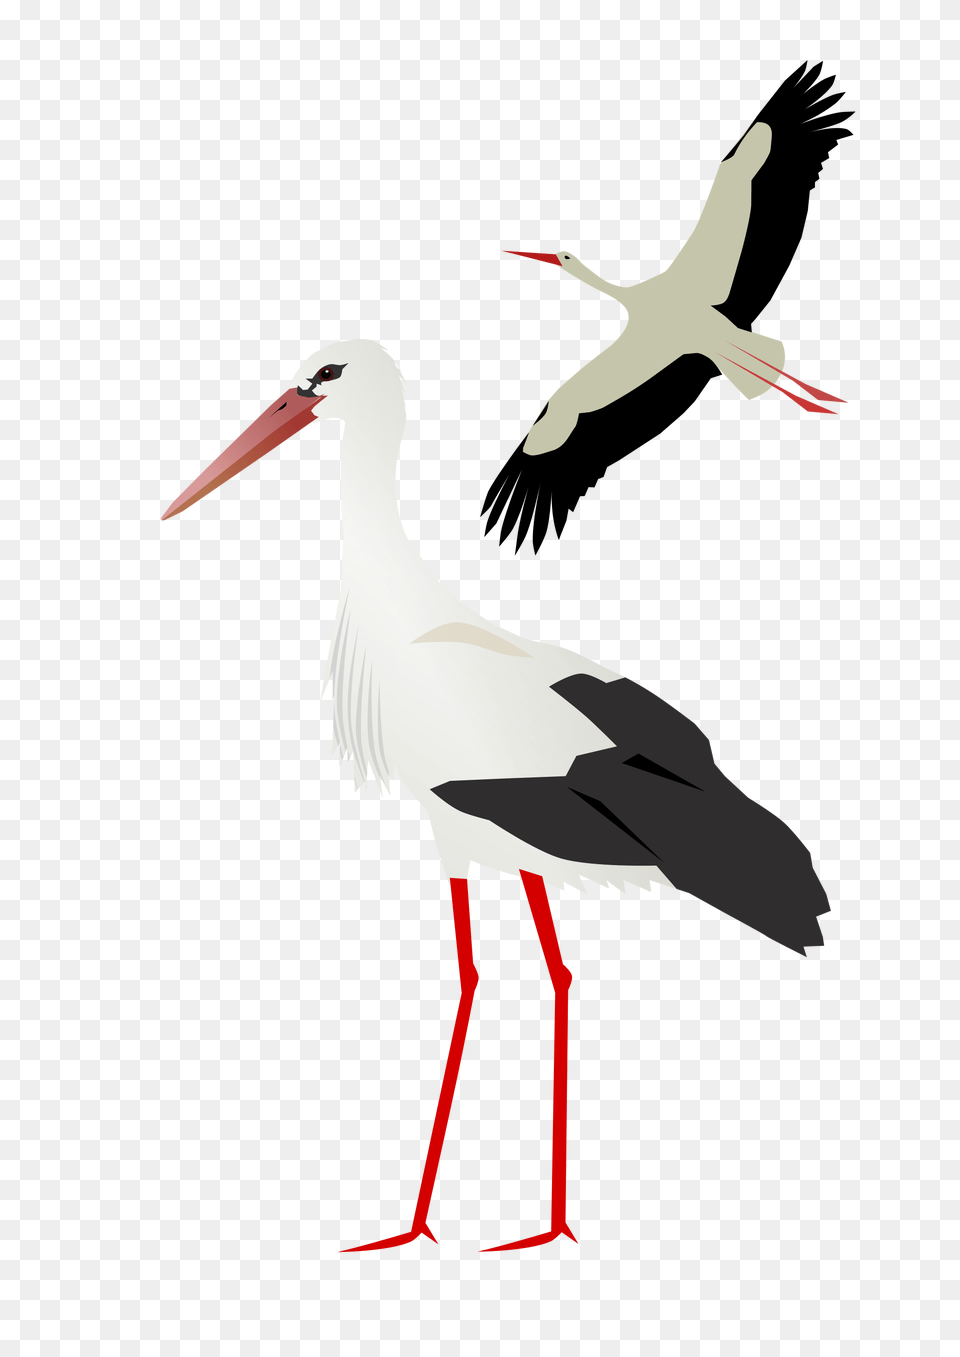 Stork, Animal, Bird, Waterfowl, Crane Bird Png Image